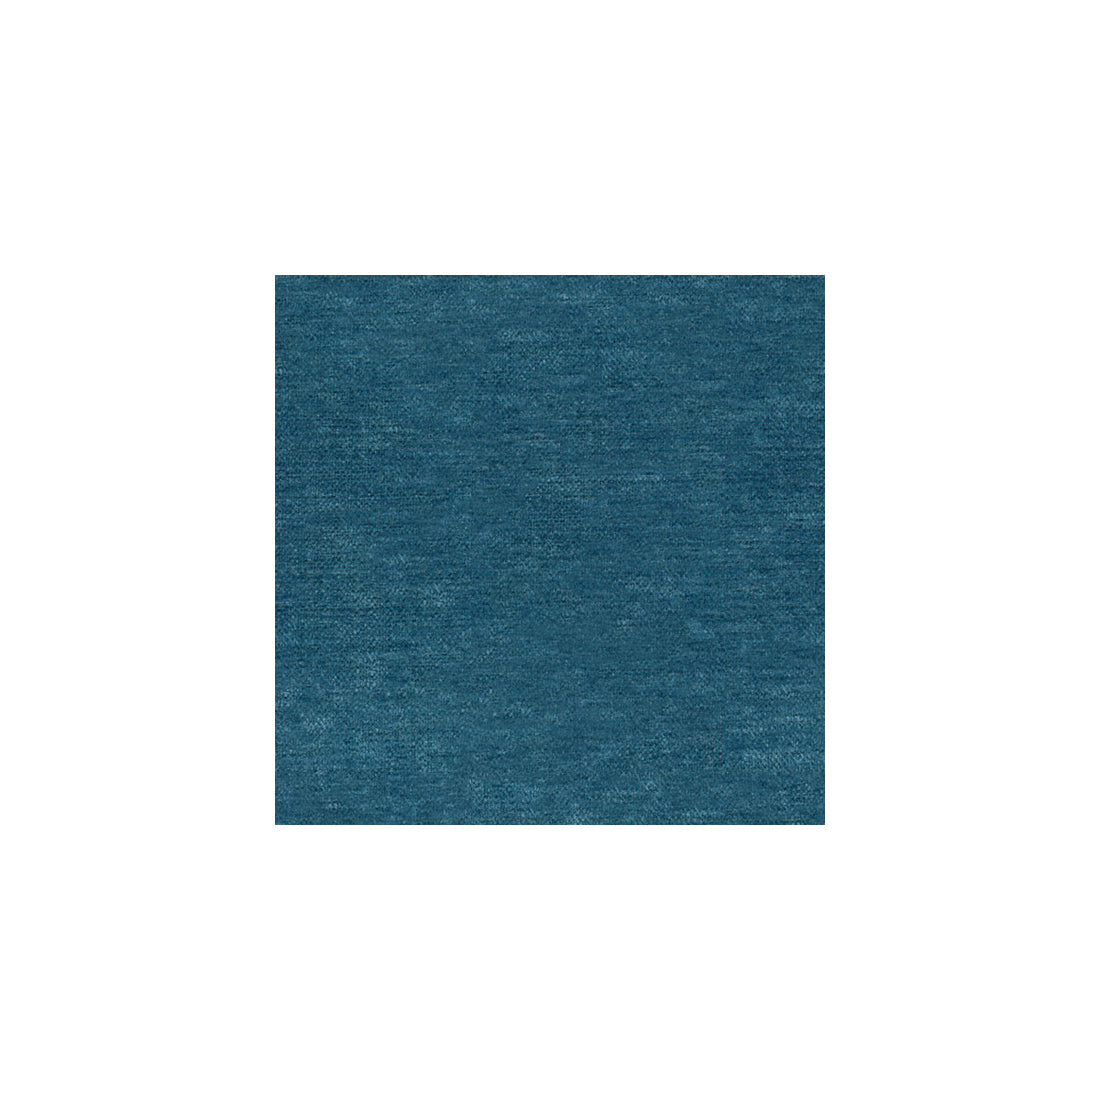 Kravet Basics fabric in 31776-15 color - pattern 31776.15.0 - by Kravet Basics